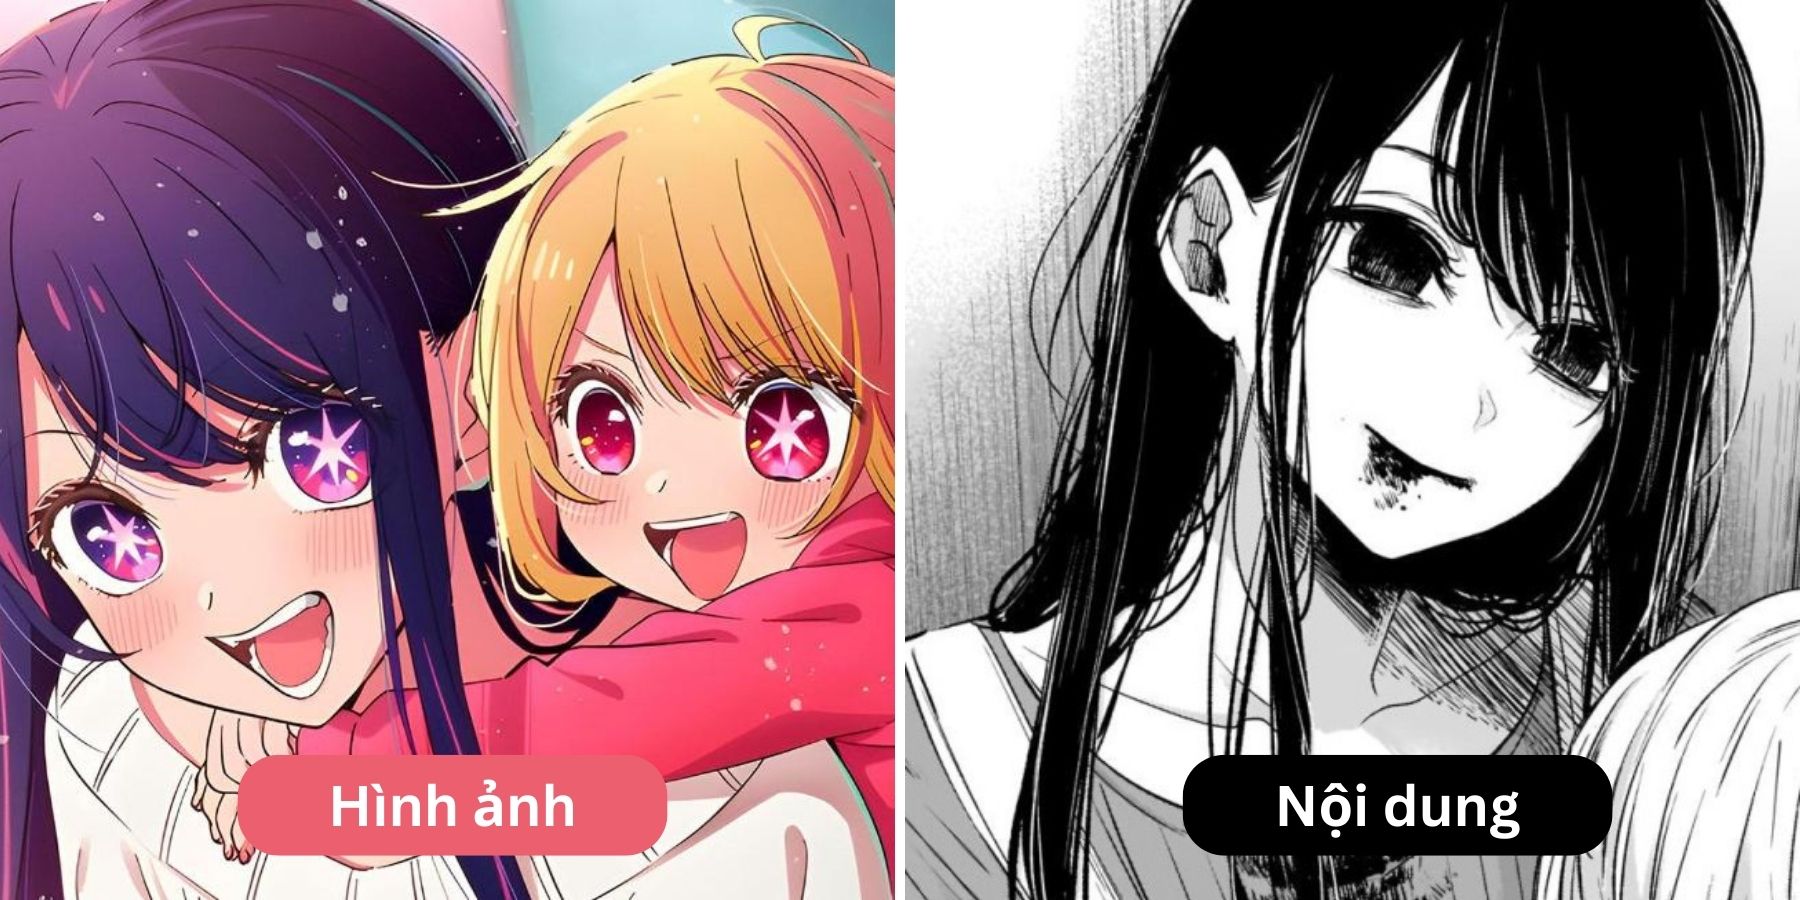 TOP 5 manga, anime nhìn thì dễ thương nhưng nội dung toàn đen với tối! -  Trường THPT Vĩnh Thắng